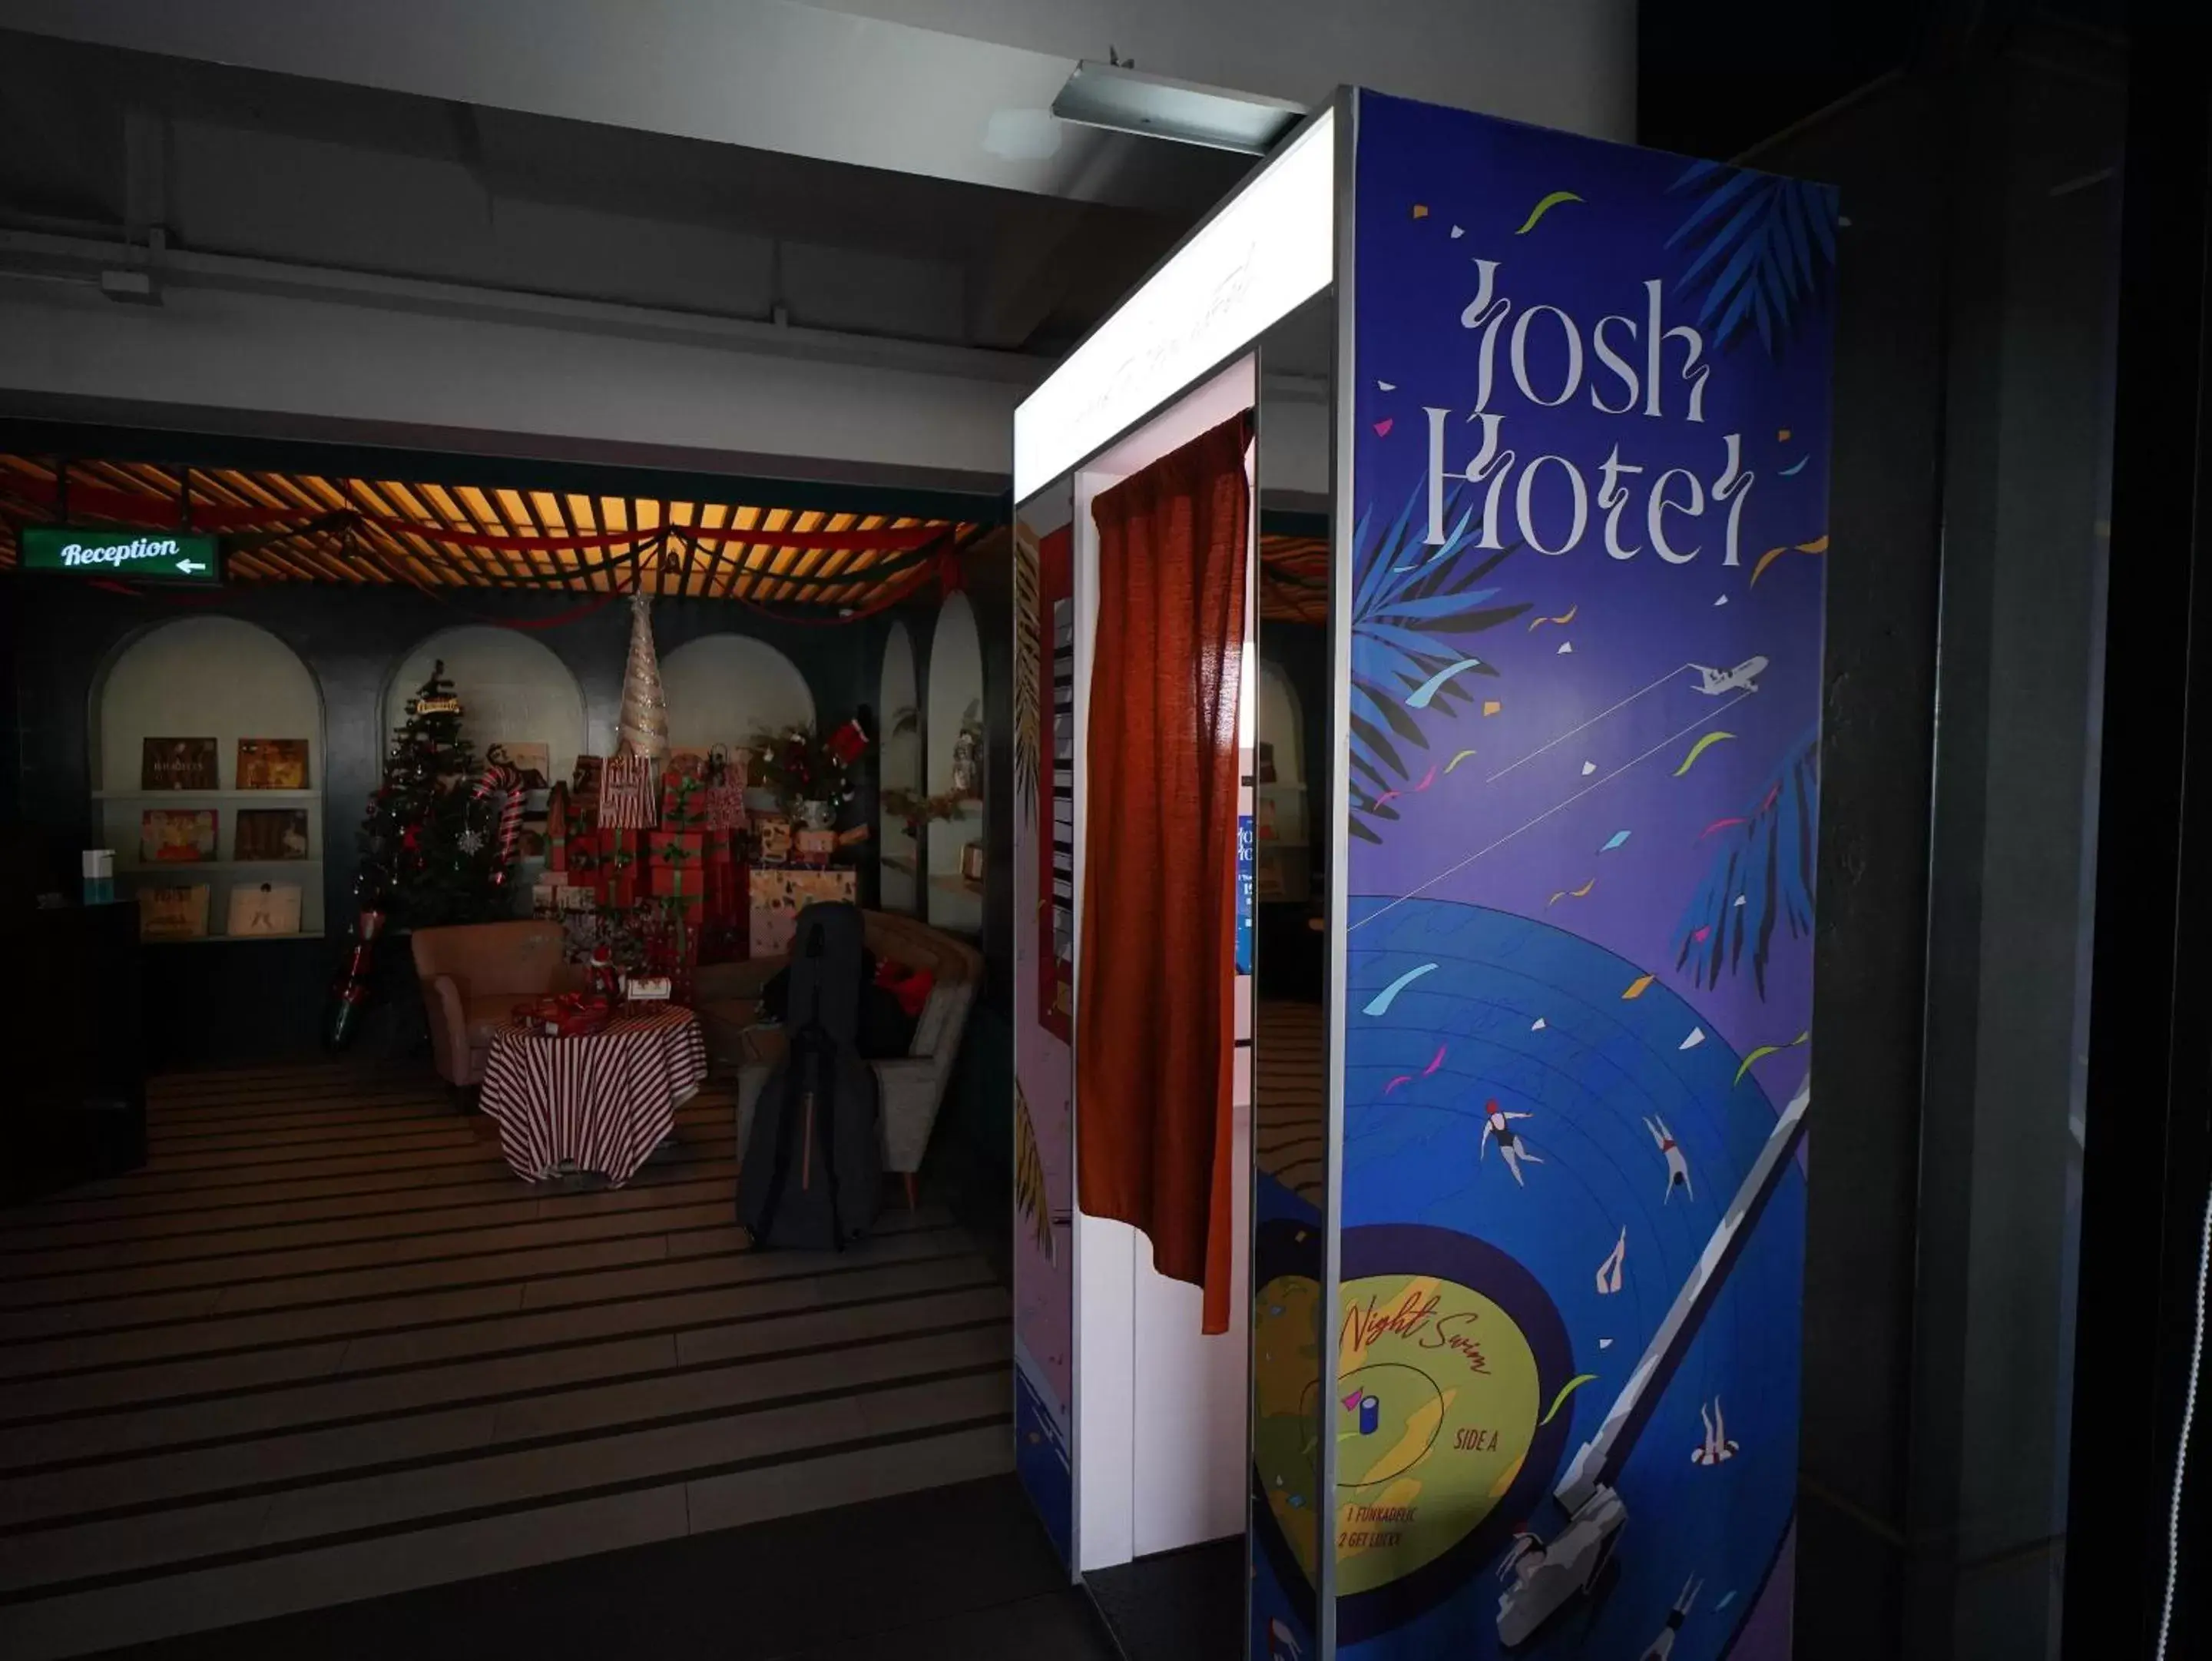 Lobby or reception in Josh Hotel